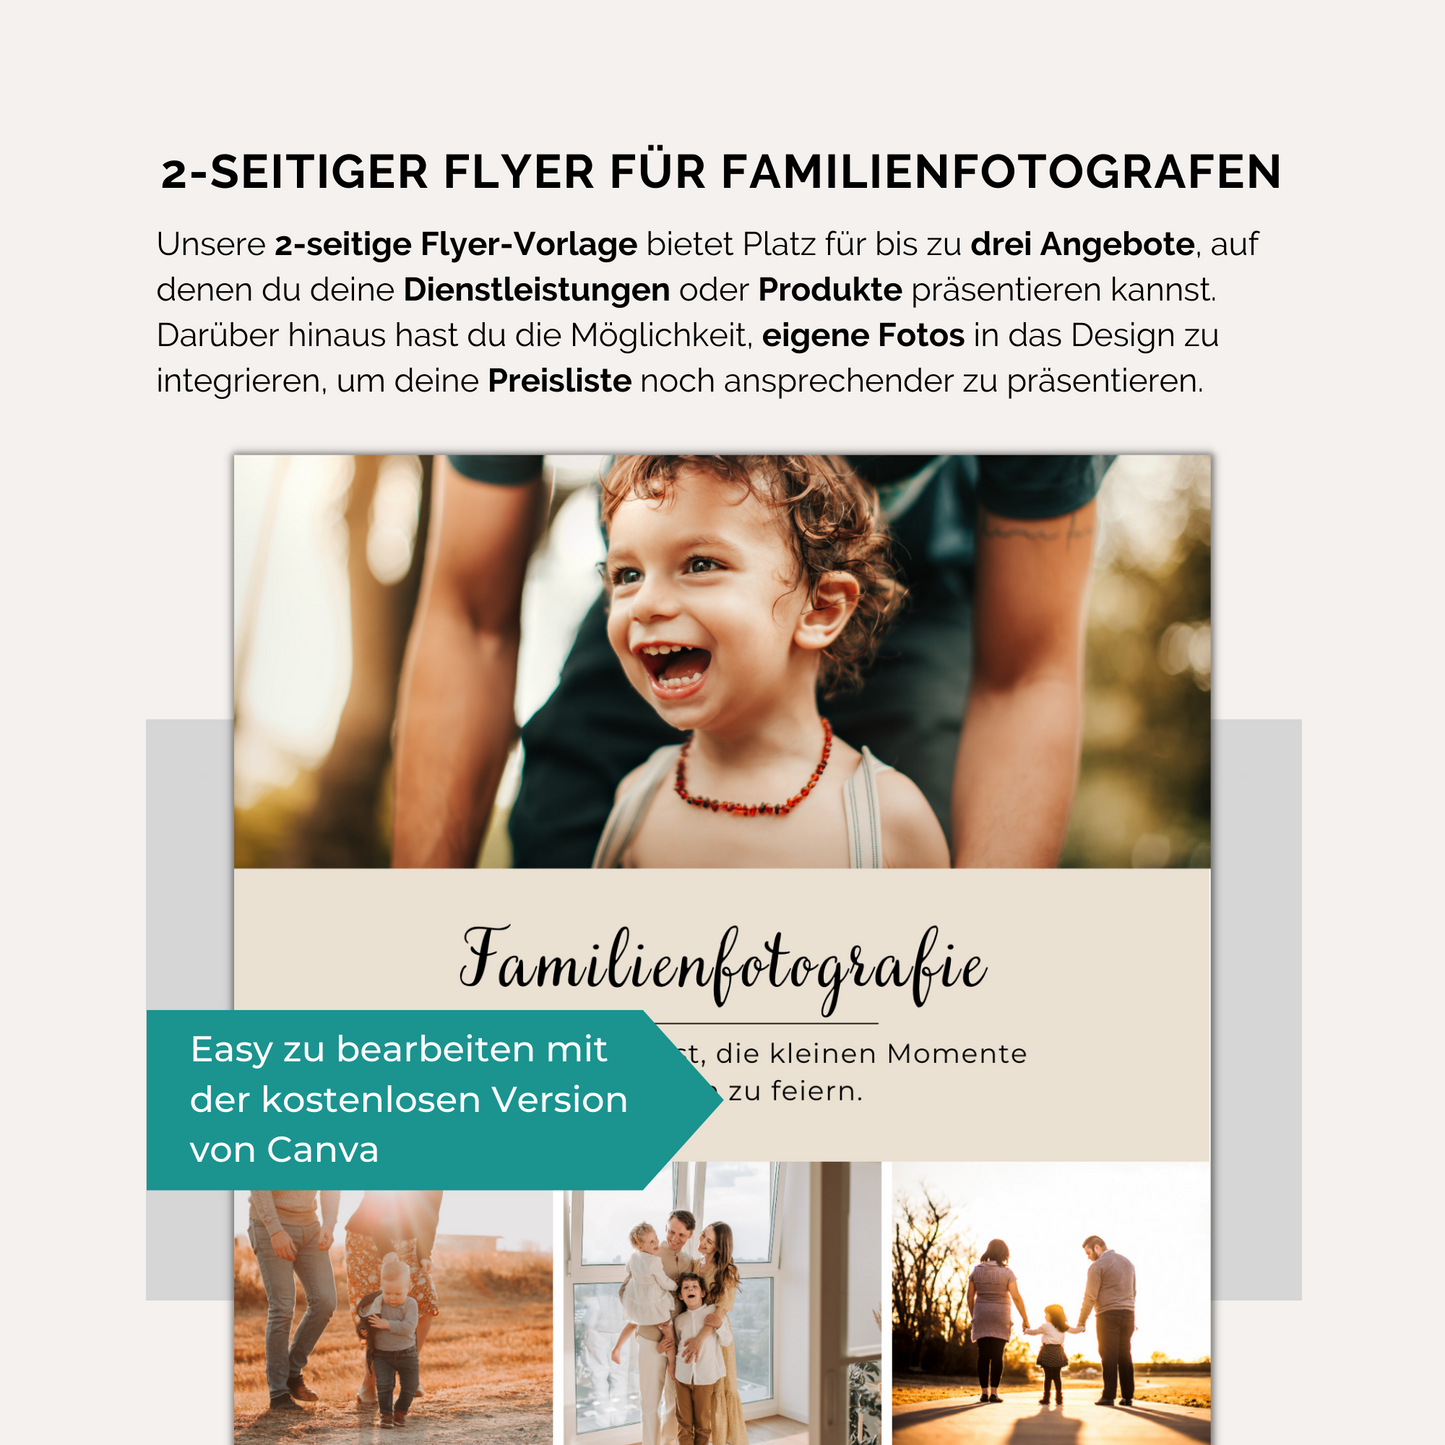 2-seitige Flyer-Vorlage für Familienfotografen. In Canva anpassbar.